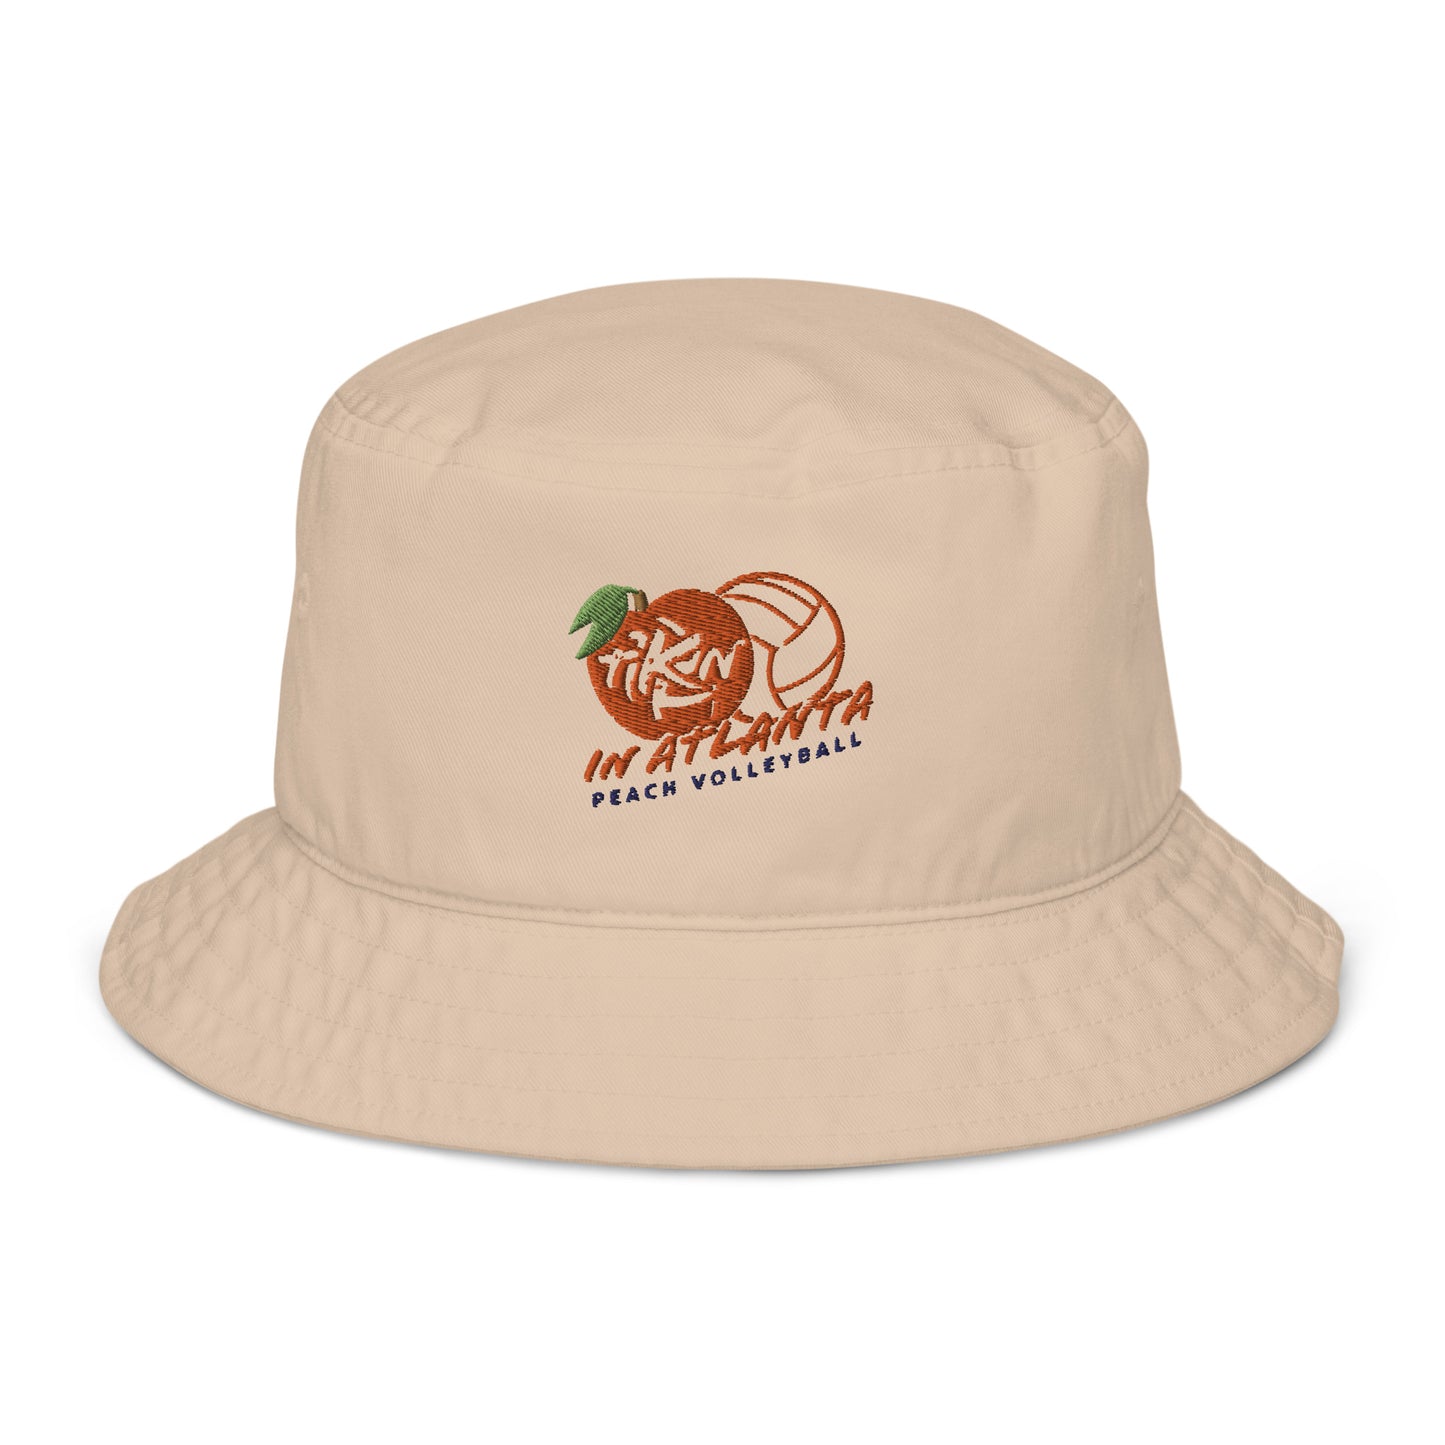 TKN Atlanta Organic bucket hat